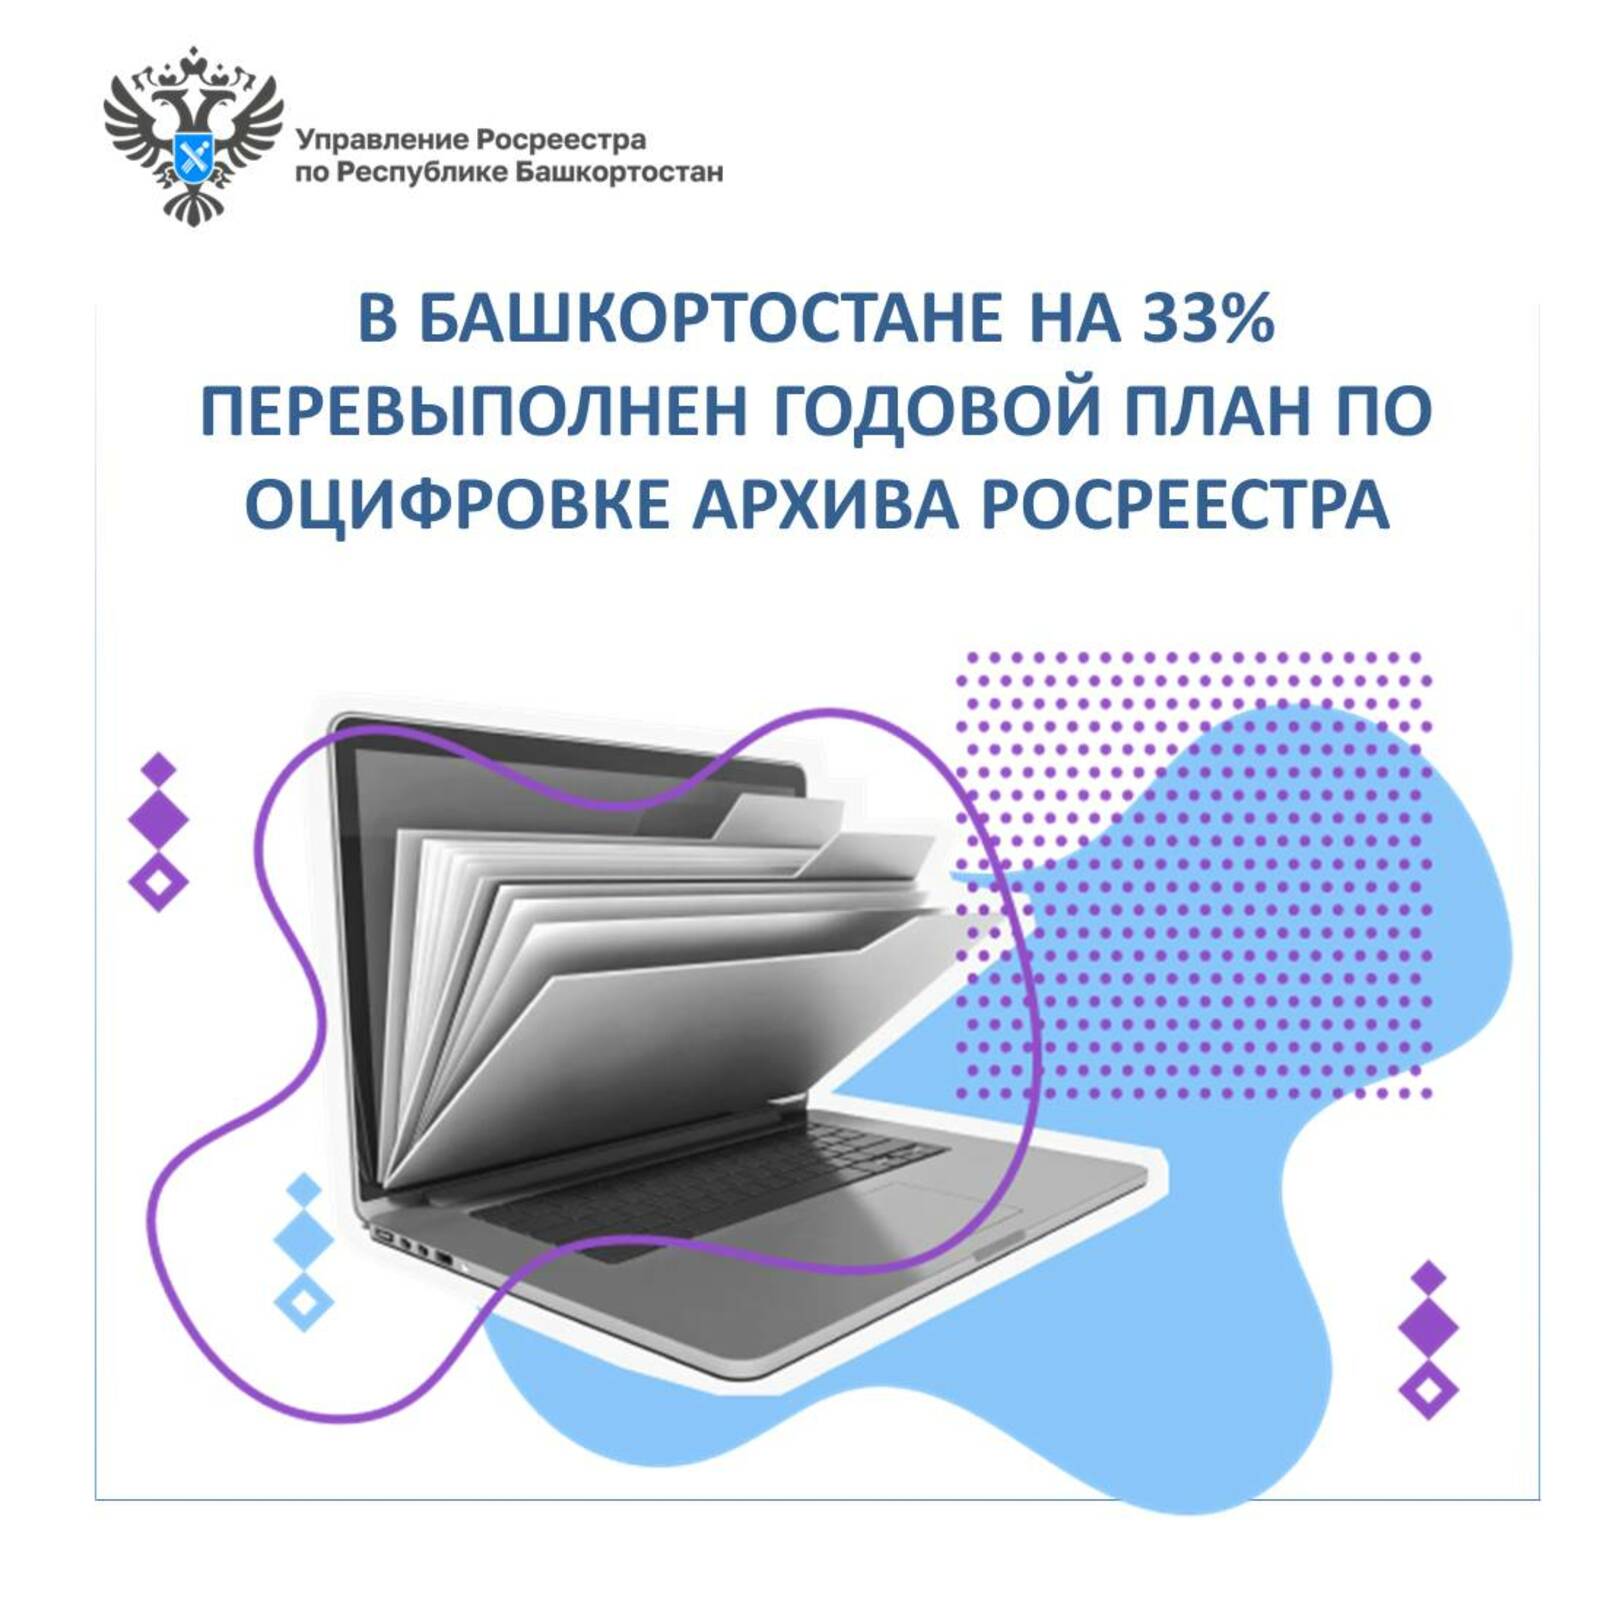 В Башкортостане на 33% перевыполнен годовой план по оцифровке архива Росреестра